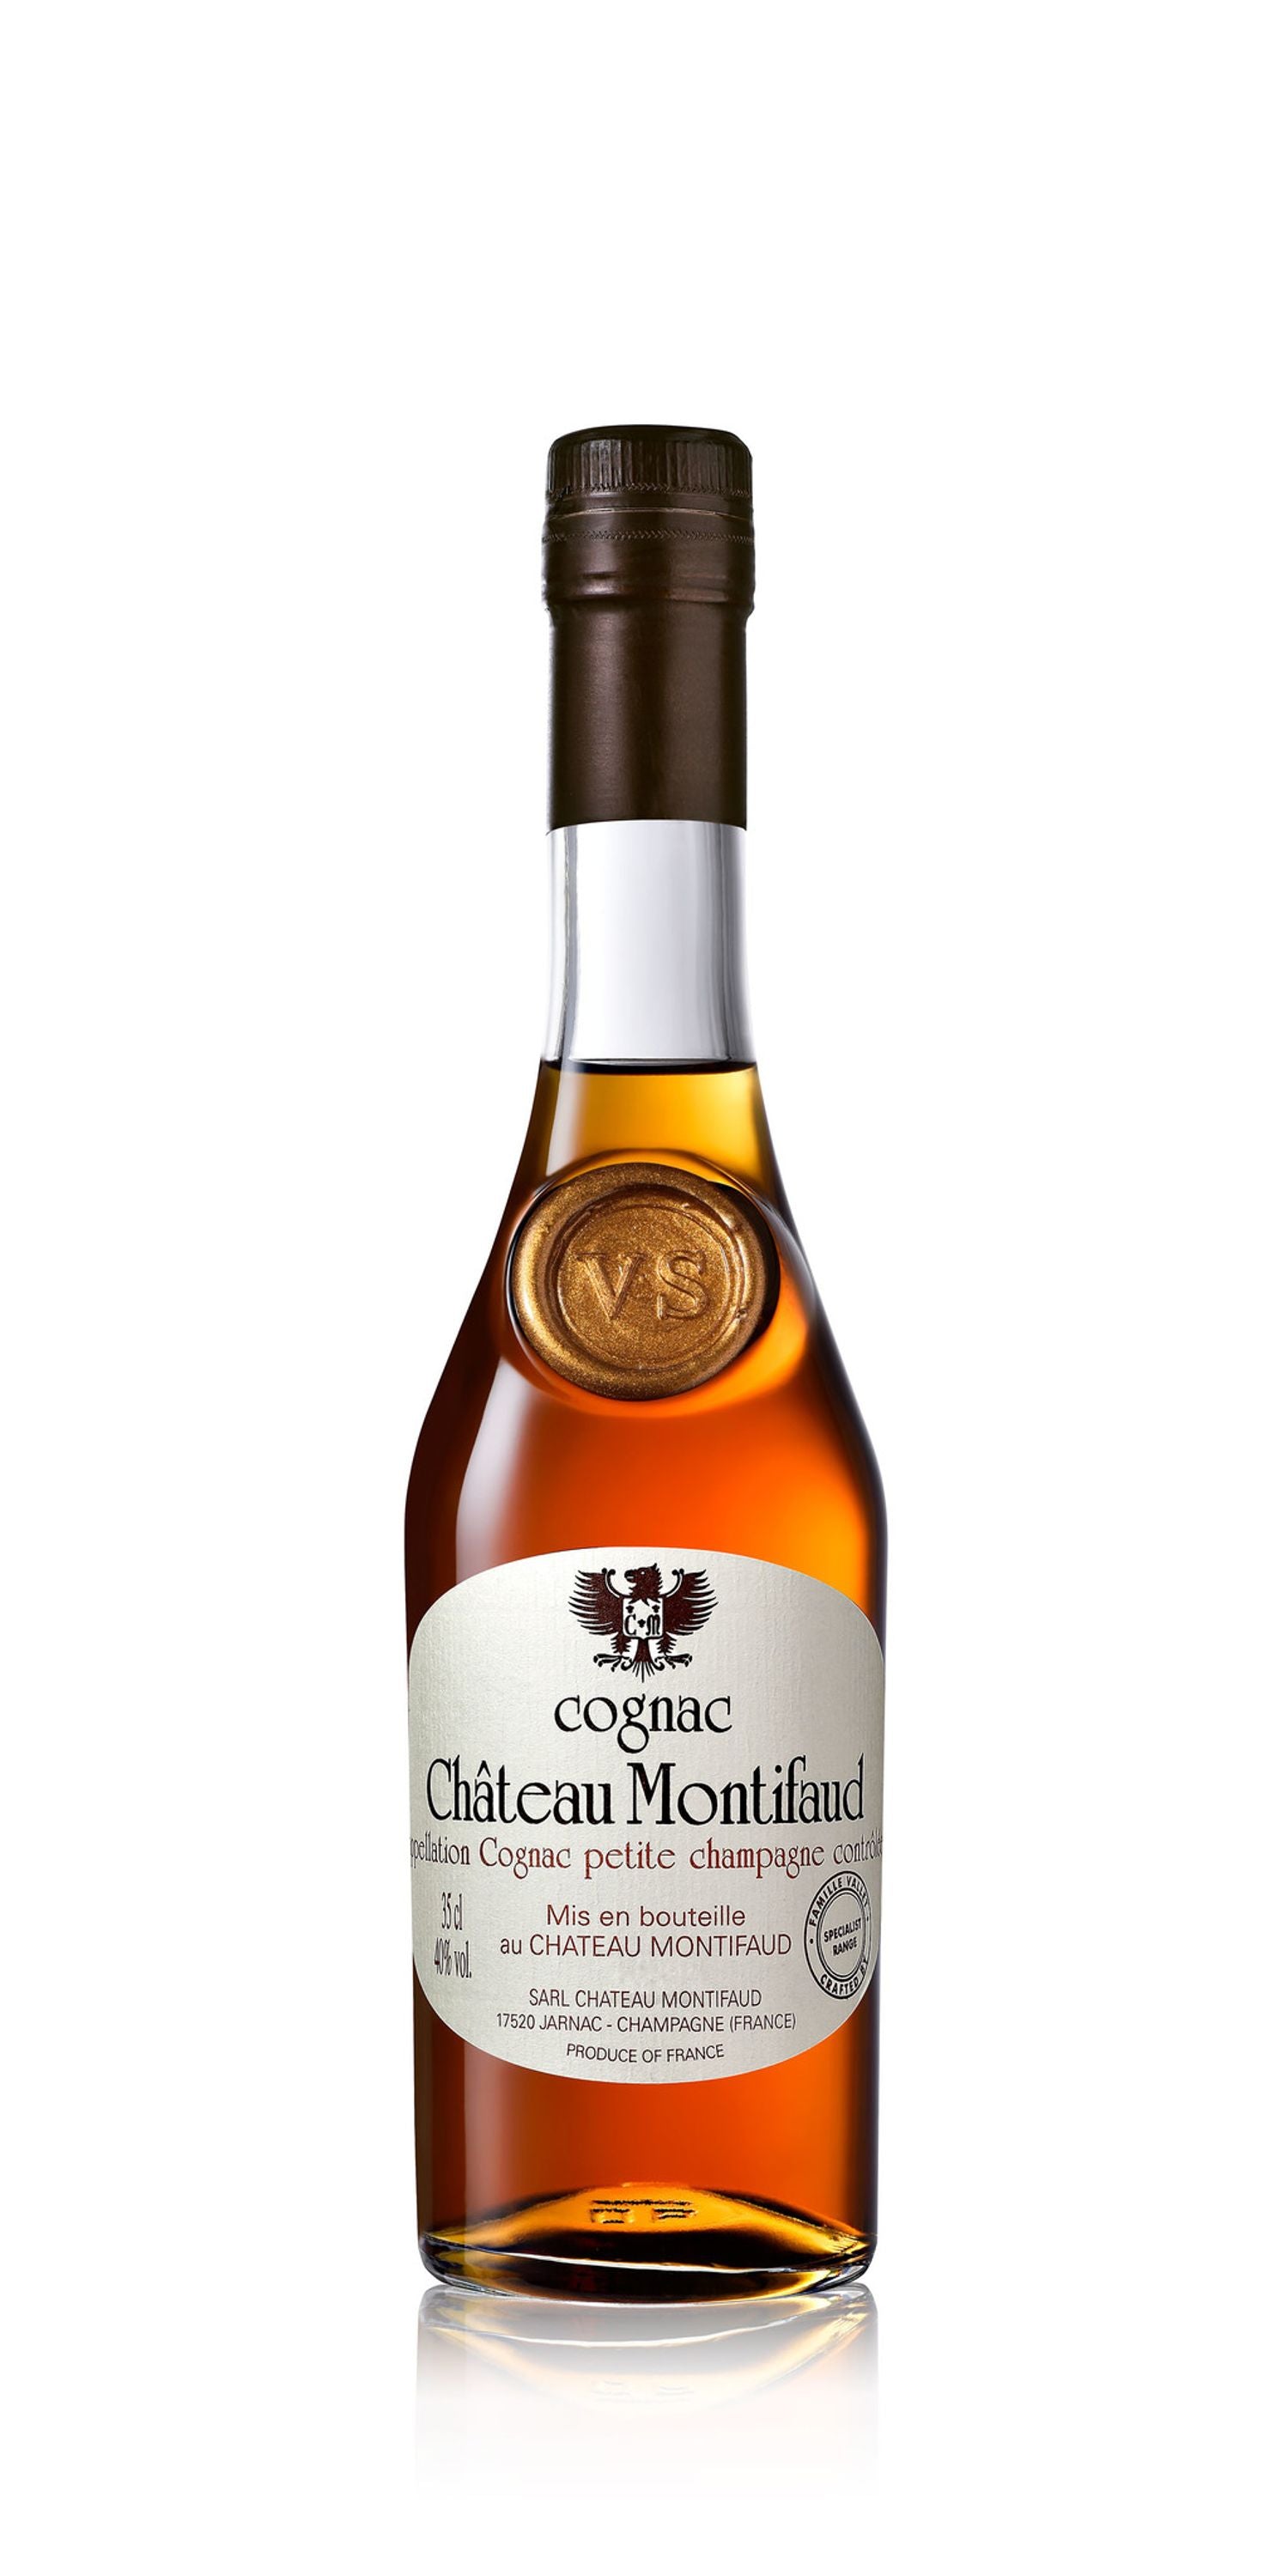 Chateau Montifaud VS 0.35l, alc. 40% vol., cognac